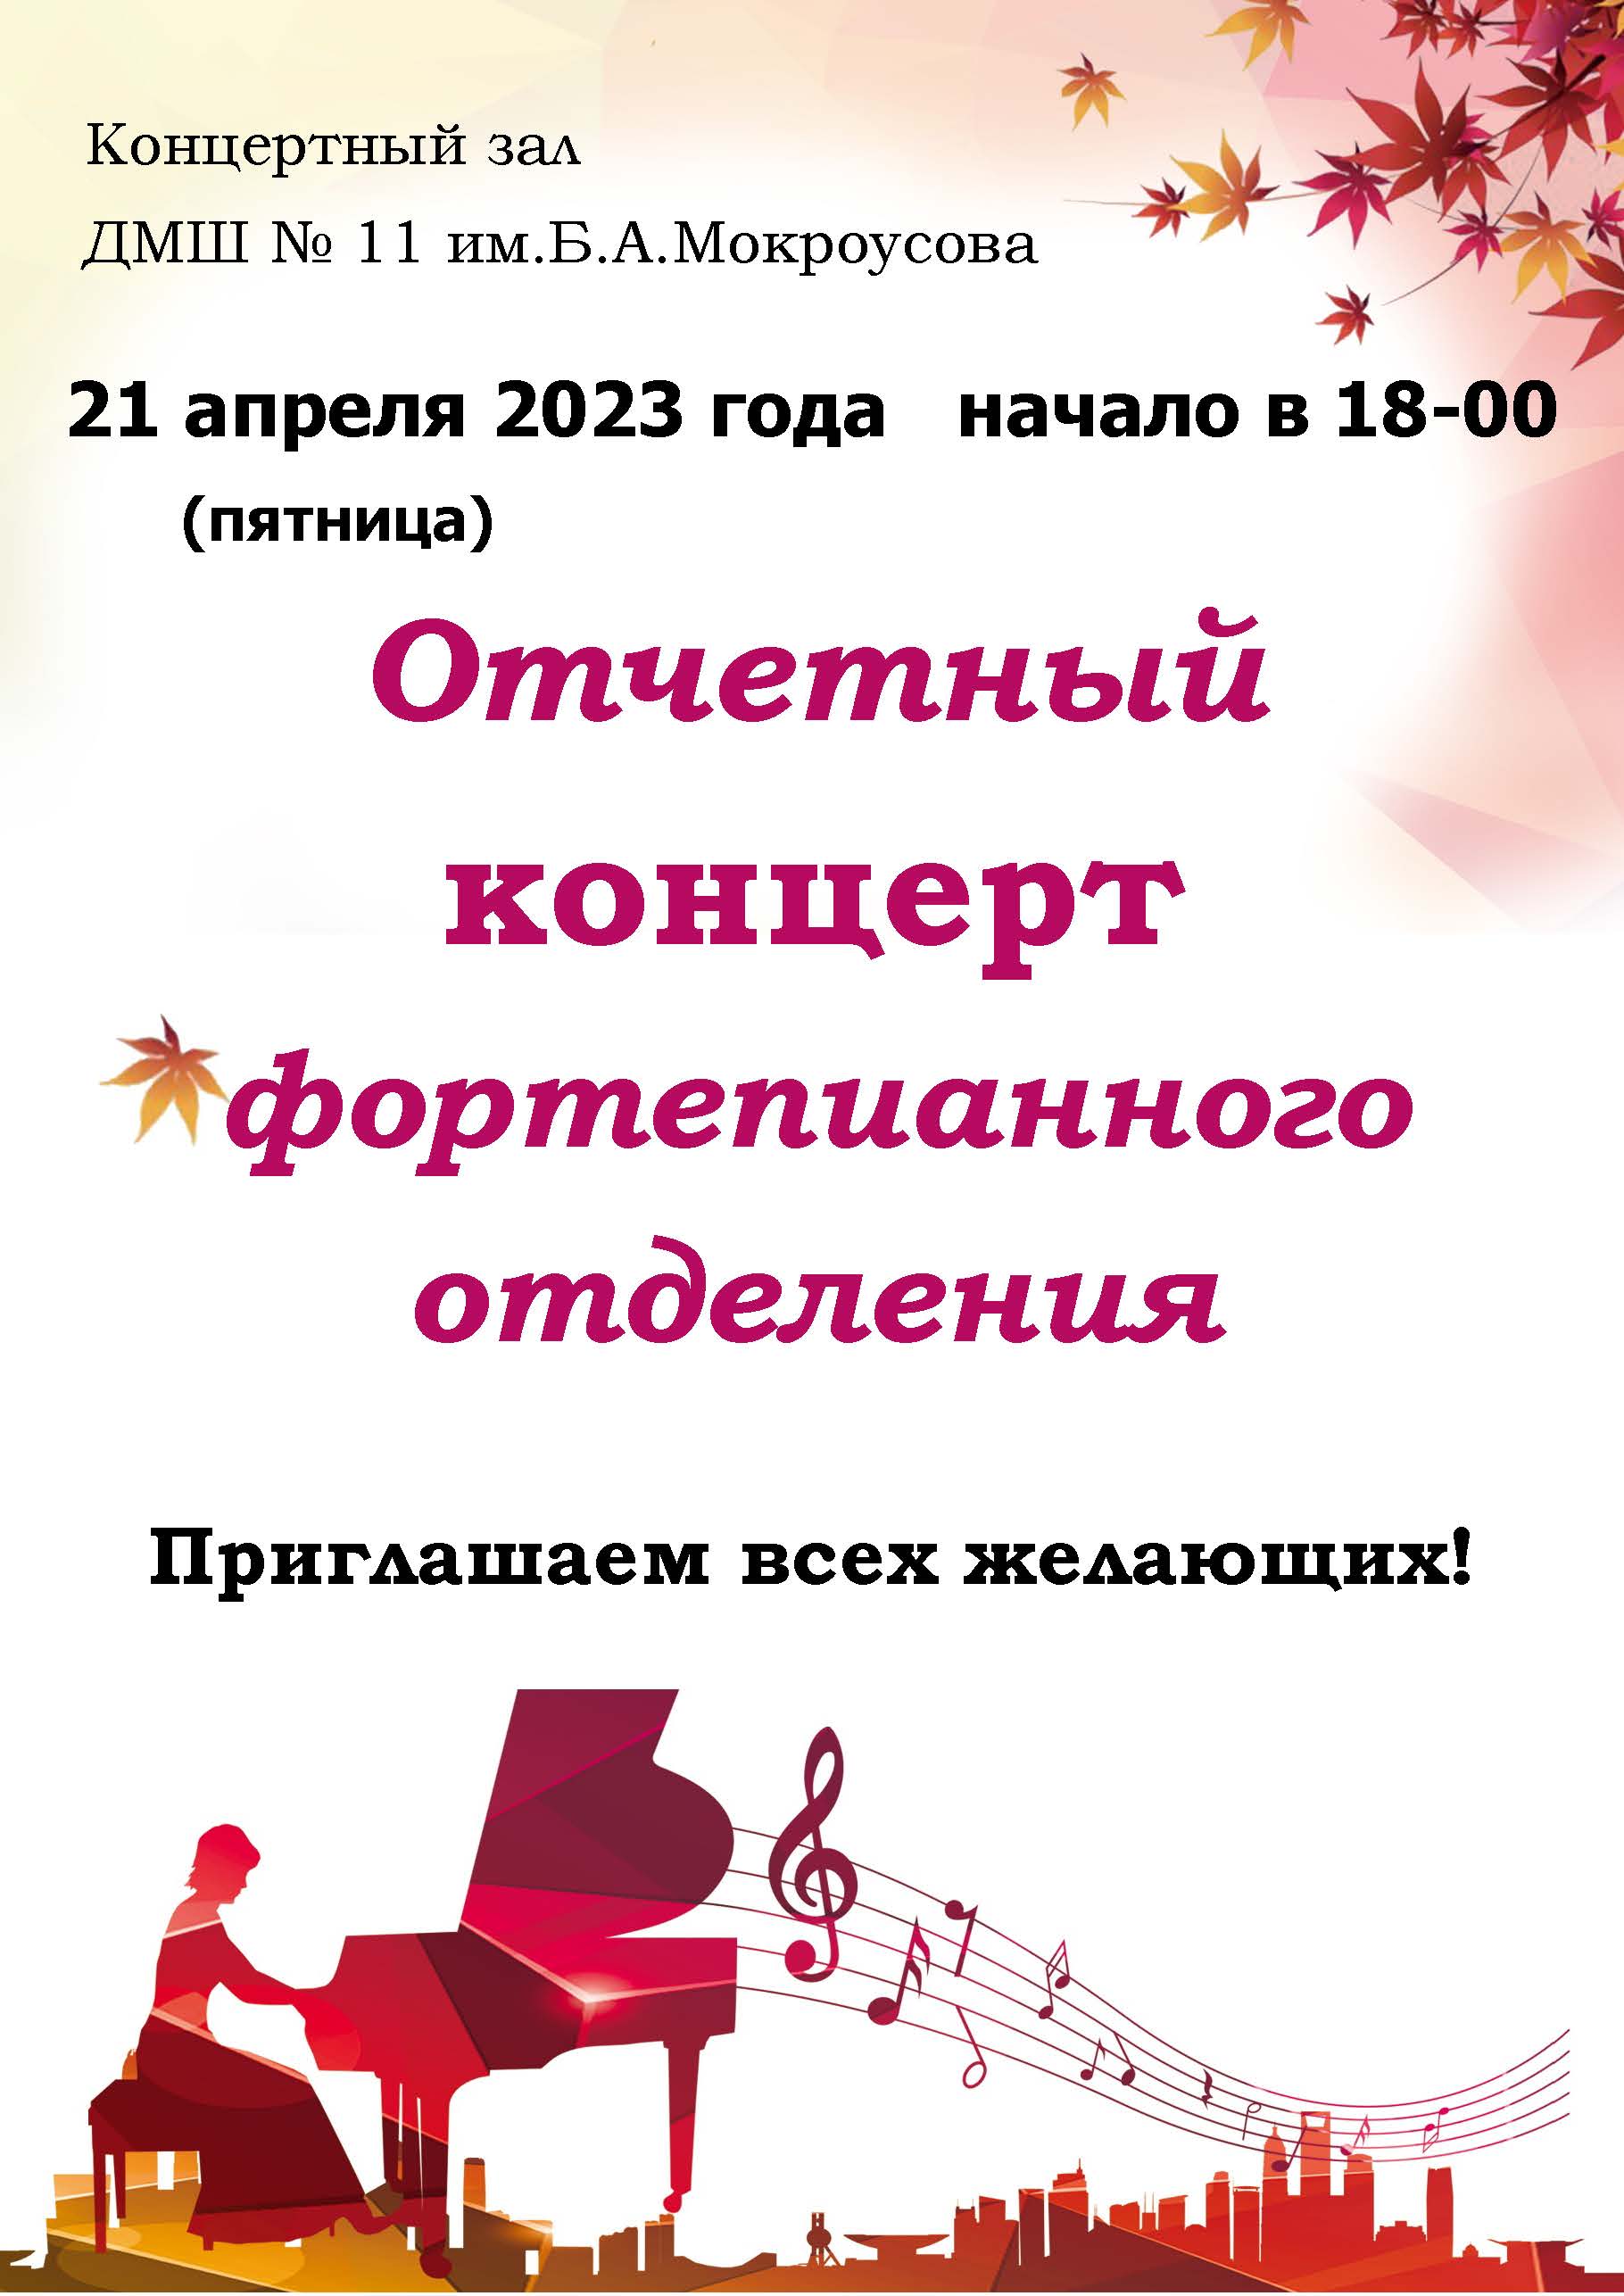 Отчетный концерт фоно апр 2023